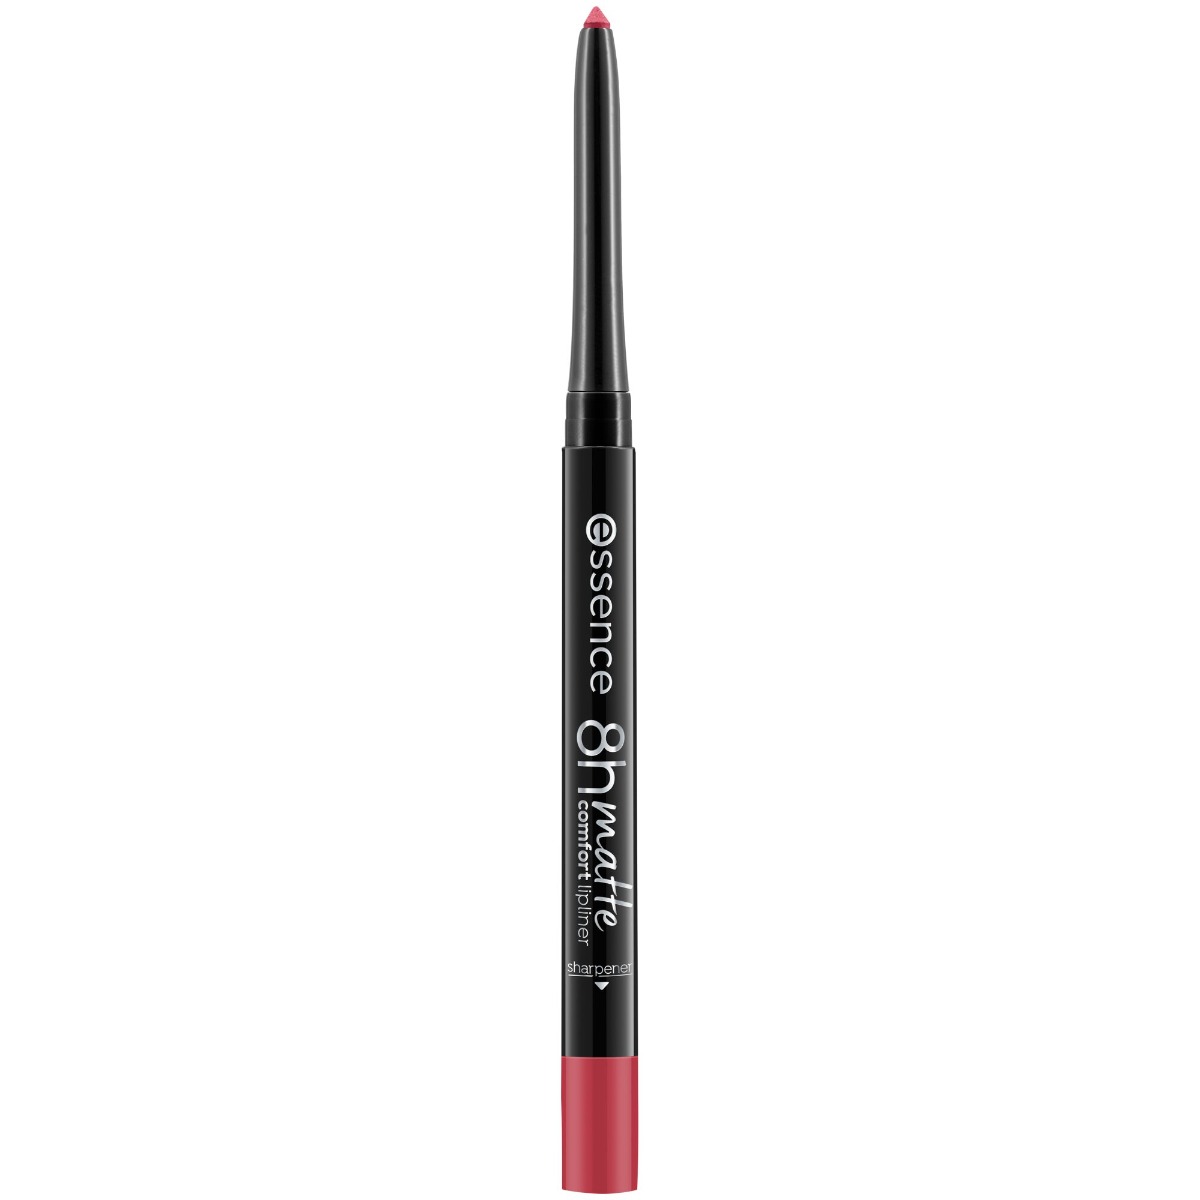 Creion pentru buze 8H Matte Comfort 07 - Classic Red, 0.3g, Essence